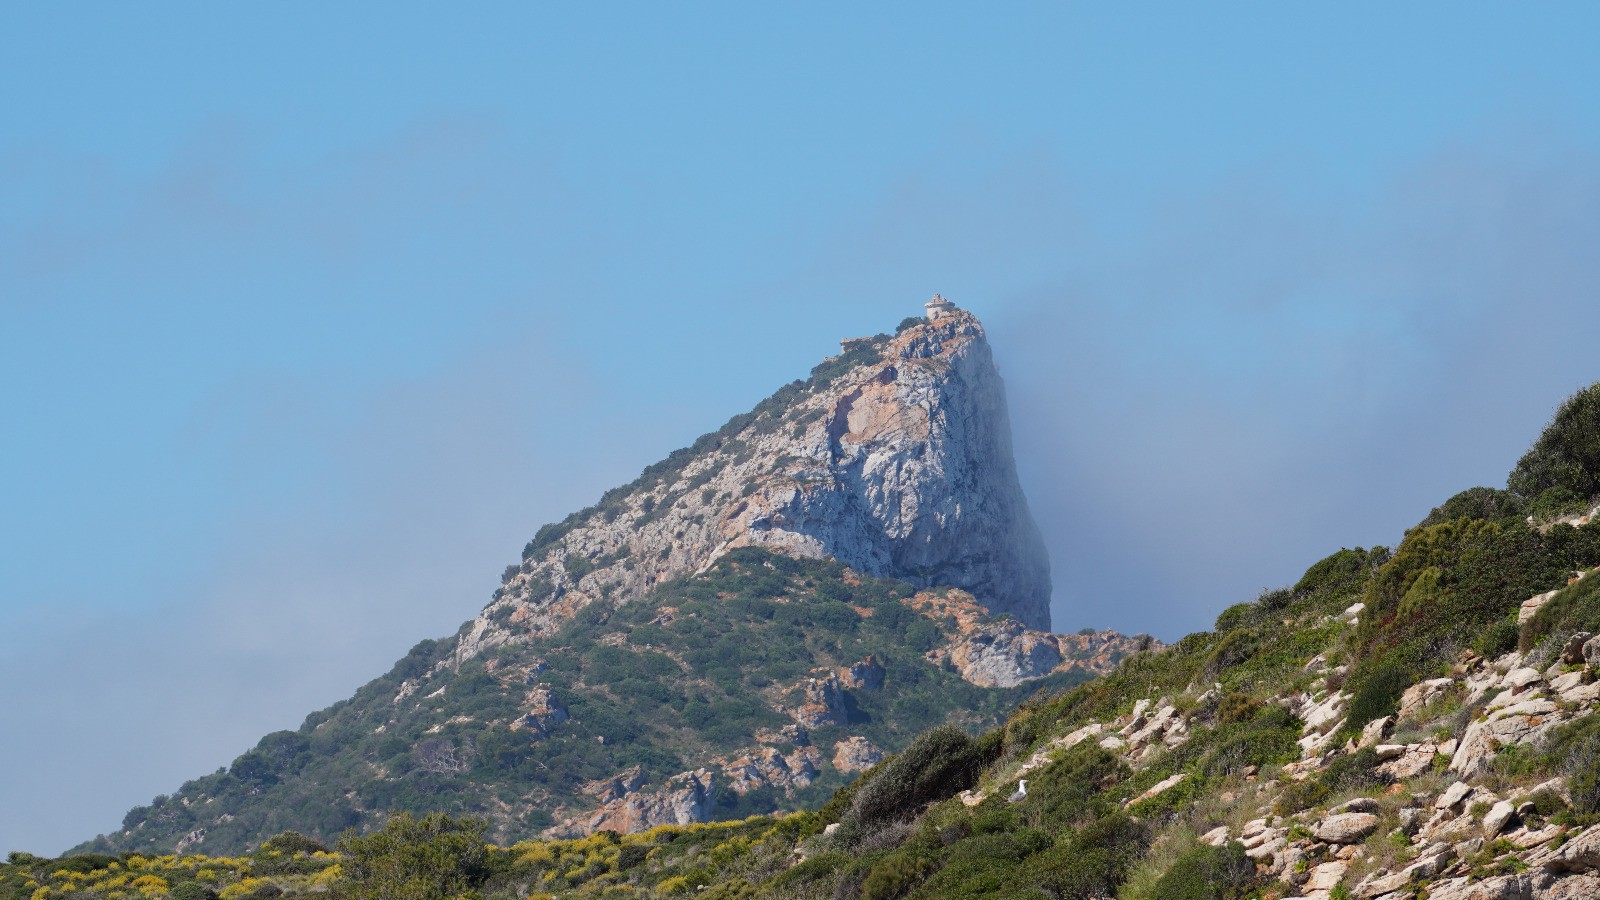 El Consell de Mallorca incrementa un 10,3 % el pressupost destinat al Parc Natural de sa Dragonera per a aquest 2024 respecte al de 2023, en destinar 828.475 euros per a l'exercici d'enguany enfront dels 750.869 de l'any passat. L'autoritat de gestió del parc, composta pel Departament de Medi Ambient, Medi Rural i Esports del Consell de Mallorca i la Conselleria d'Agricultura, Pesca i Medi Natural del Govern de les Illes Balears es va reunir per fer balanç de les activitats duites a terme durant 2023 i aprovar el Programa Anual d'Execució del Parc de sa Dragonera (format per l'illa de sa Dragonera i els illots des Pantaleu i sa Mitjana). En total, el programa del parc per a 2024 disposa d'un pressupost global d'1.128.628 euros, incloent-hi la partida de la Conselleria, amb una aportació real que s'eleva a 300.207 euros. Entre les novetats destacades del programa d'execució s'inclou la realització d'un inventari de coves en conservació d'hàbitats. El vicepresident i conseller de Medi Ambient, Medi Rural i Esports, Pedro Bestard, ha destacat que la planificació per a 2024 respon a «una aposta clara per preservar la sostenibilitat del parc natural, potenciant els projectes de conservació i protecció d'aquest espai natural protegit». Amb tot, Bestard ha destacat unes altres de les actuacions que es duran a terme enguany, com «les reparacions en diferents instal·lacions del parc» i la realització d'«un estudi per a la canalització de la cova des Moro per optimitzar els recursos d'aigua», així com la importància de «continuar avançant en els estudis de recerca d'espècies, com el falcó marí o la baldriga balear, entre altres». Altres prioritats del programa anual A més, es continuarà amb la conservació de la flora i fauna i també es té previst fer una sessió d'assessorament d'agricultura ecològica a la brigada de l'IBANAT i la recuperació de la zona de sembra. El Programa d'Execució Anual del Parc Natural de sa Dragonera també inclou les prospeccions arqueològiques en la cova des Moro, ja que, avui dia, segons els arqueòlegs, poden tenir un valor rellevant per a l'arqueologia. Pel que fa a l'àrea de recerca i seguiment de diferents espècies d'interès, es continuarà amb el seguiment que s'està fent als corbs de mar (corbs marins), la baldriga balear (virot) i la gavina as Pantaleu i a sa Dragonera, i els estudis sobre la sargantana que també es duen a terme a sa Dragonera. En l'àrea de participació, es continuarà amb el projecte europeu PRO.GRE.S.S i amb el voluntariat amb diferents associacions i la col·laboració amb la xarxa local d'infància i joventut.